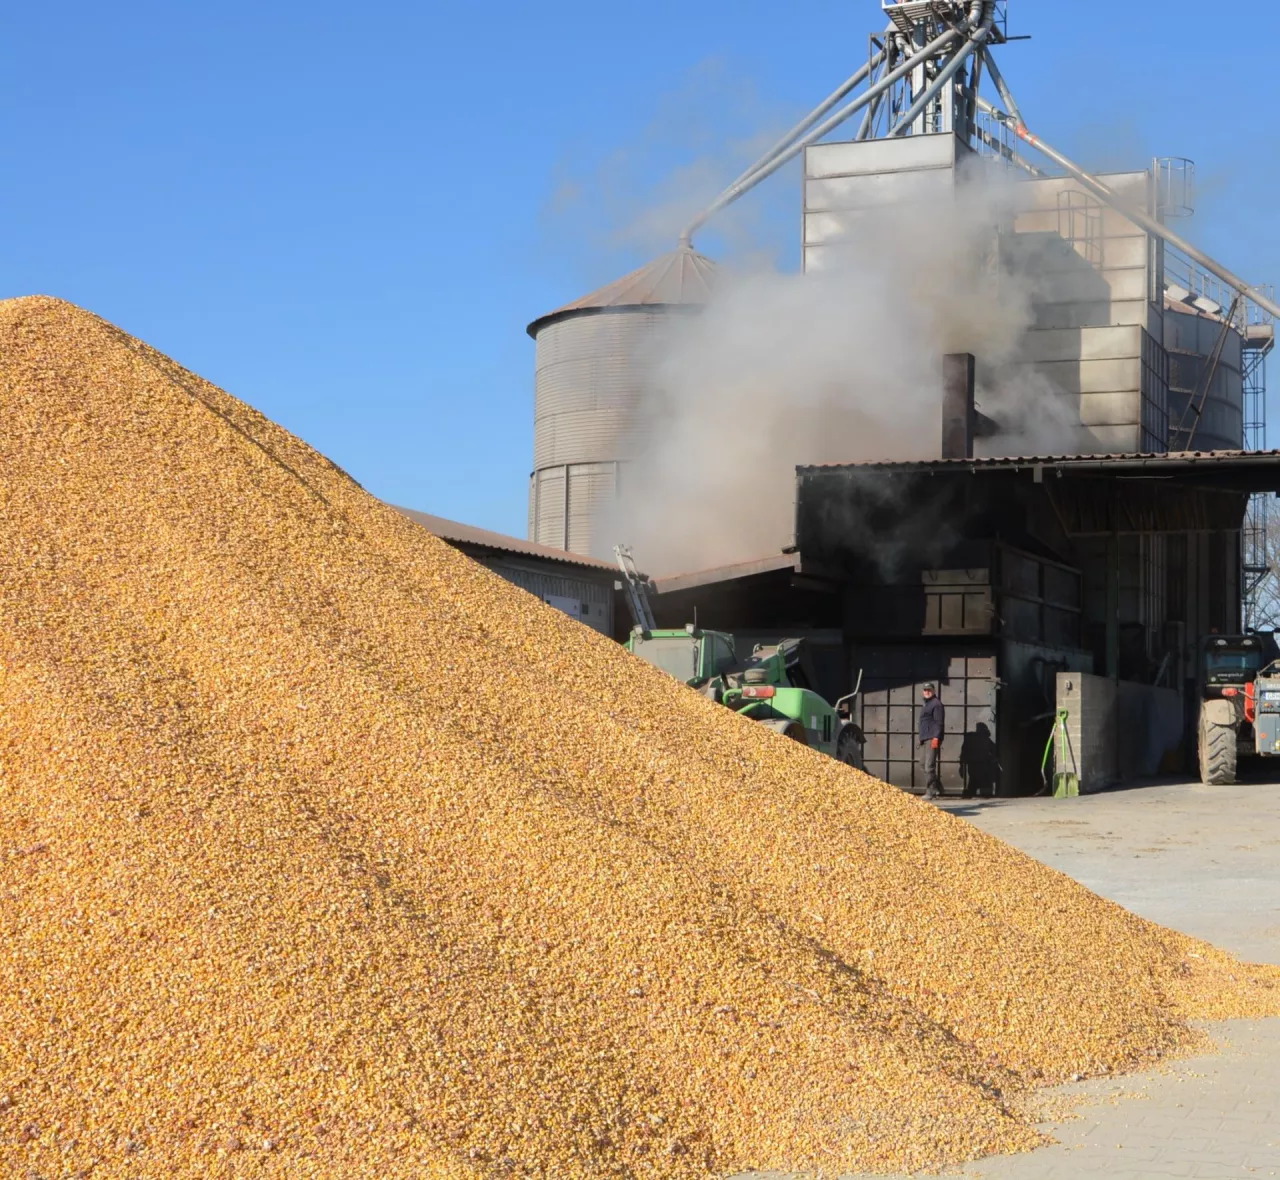 &lt;p&gt;Sprzedać mokrą kukurydzę czy ją suszyć? Eksperci policzyli, co się bardziej opłaca rolnikowi&lt;/p&gt;